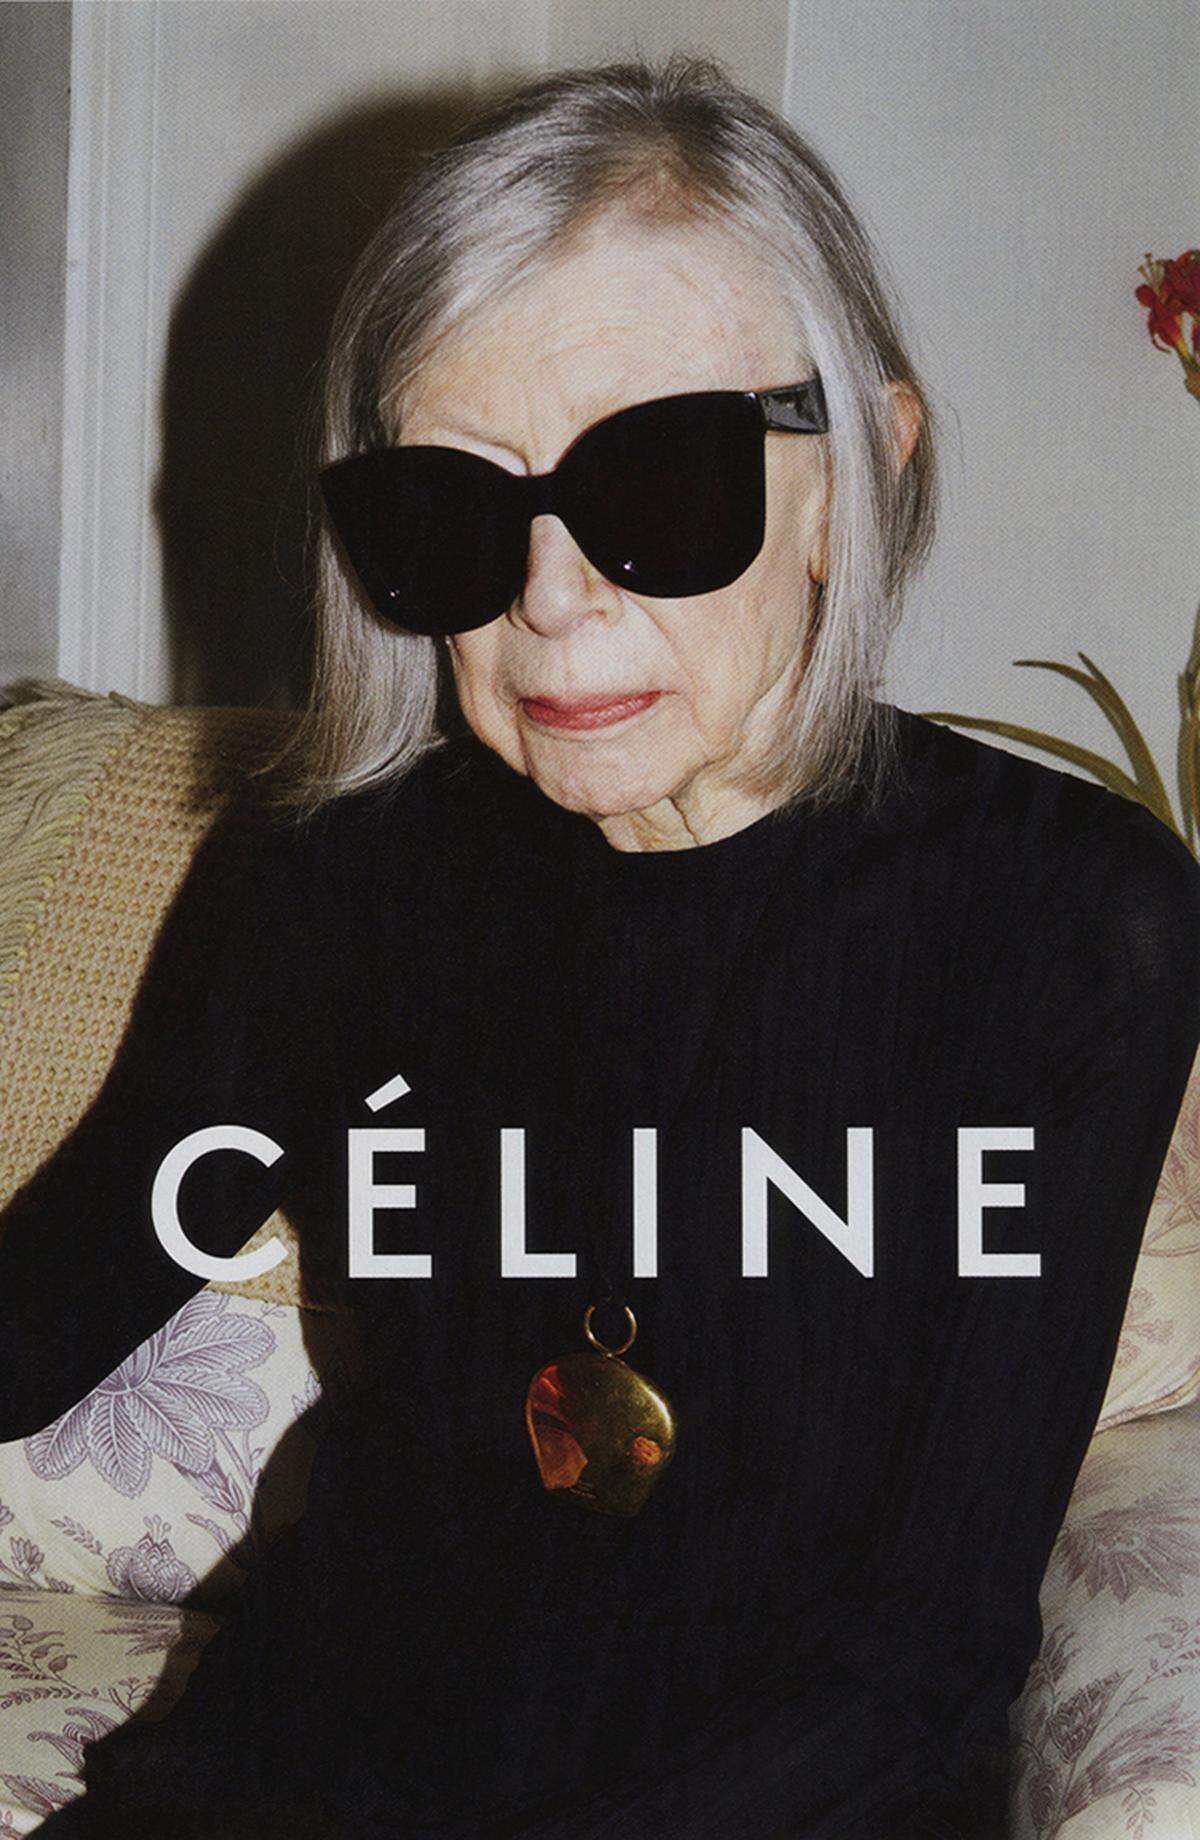 Zuvor atte das Modeunternehmen Céline die gleiche Idee. Es ließ die amerikanische Autorin Joan Didion von Starfotograf Juergen Teller ablichten. Die 80-Jährige trägt übergroße Sonnenbrillen und einen schwarzen Pullover.